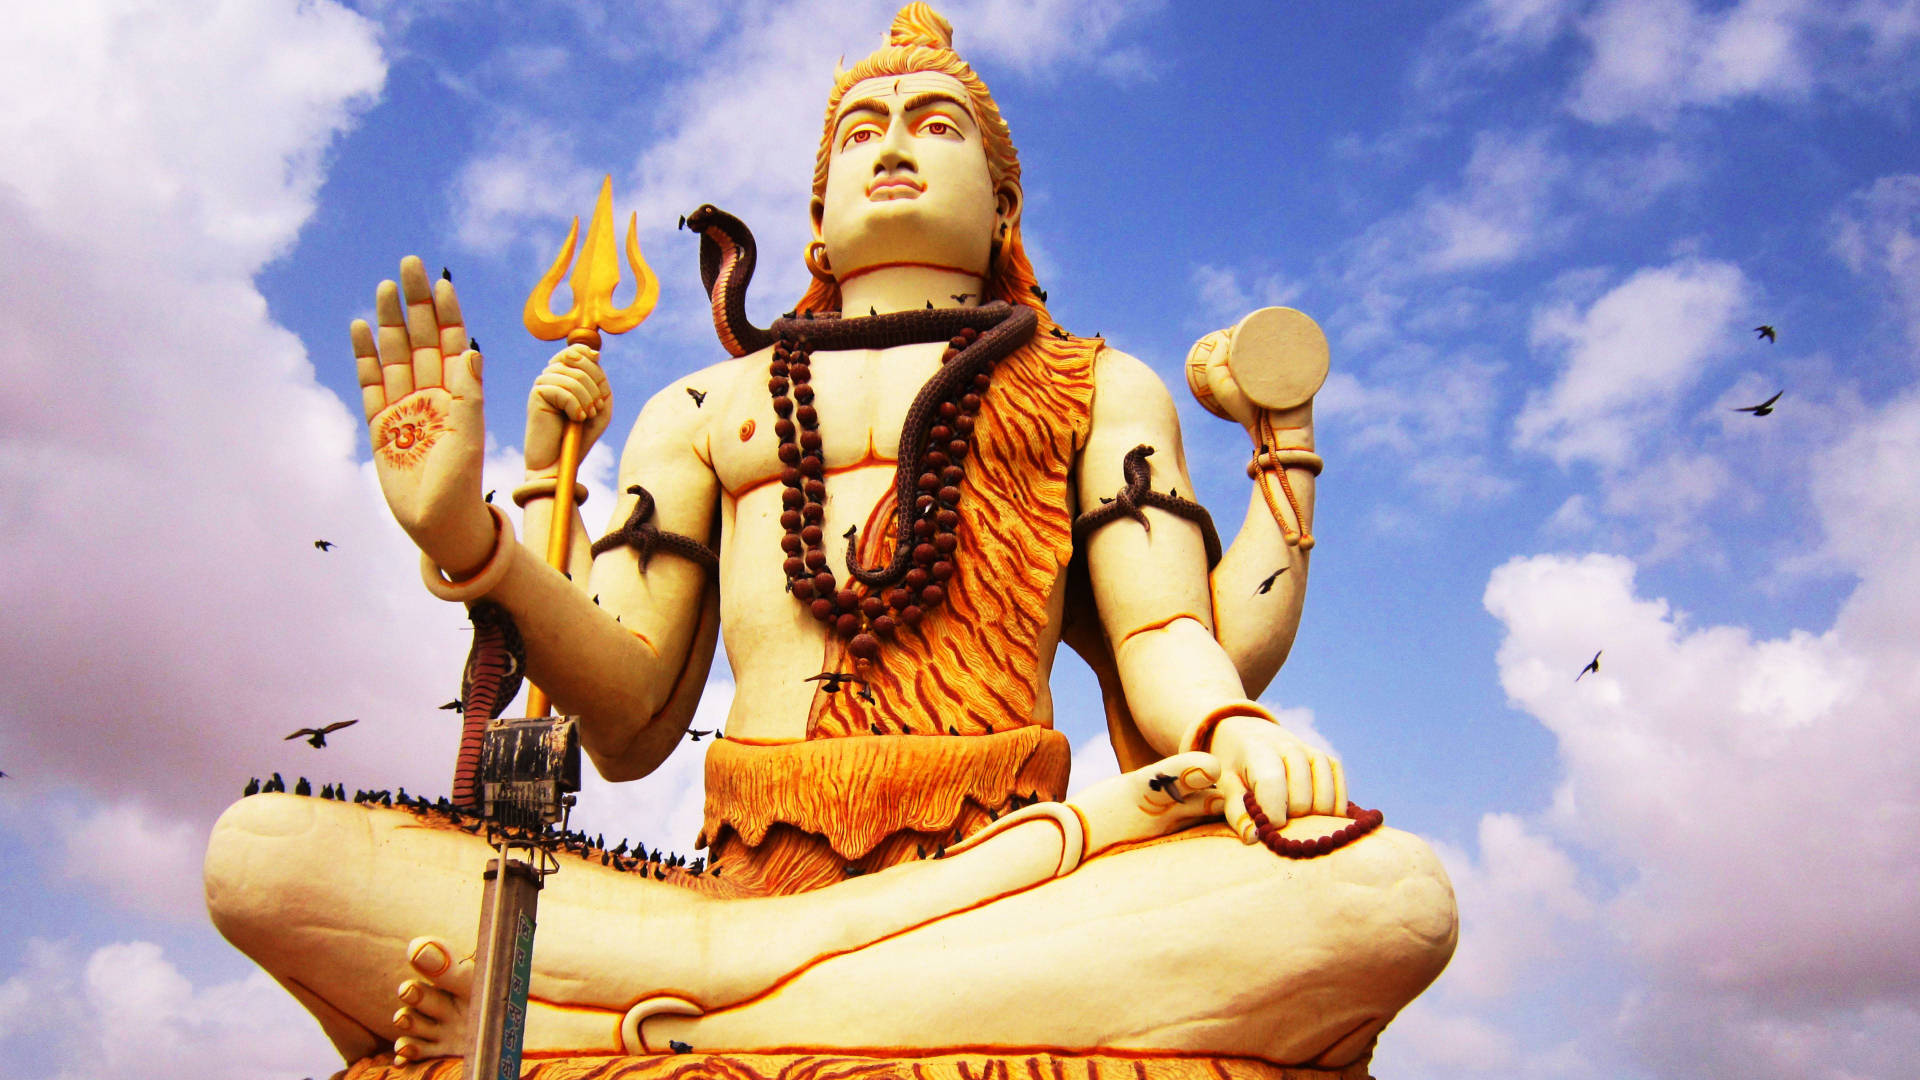 Gud Shiva mod et skyet himmel tapet Wallpaper